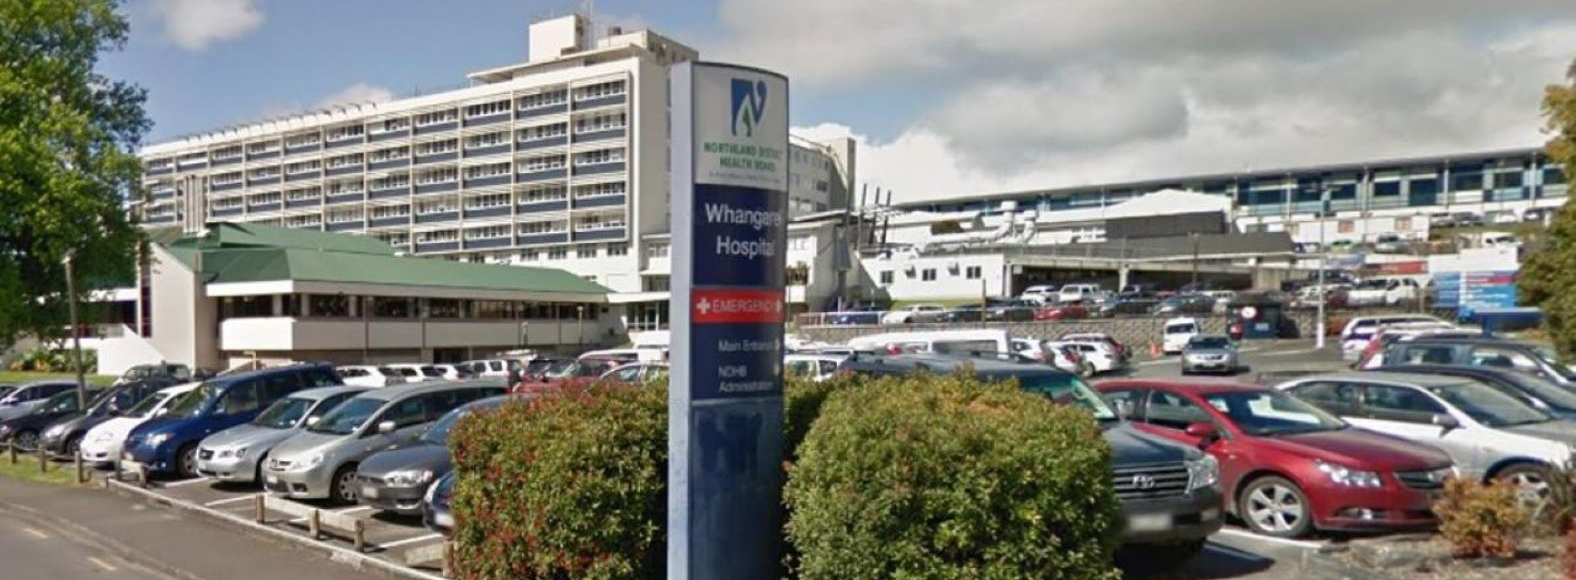 Whangarei Hospital w